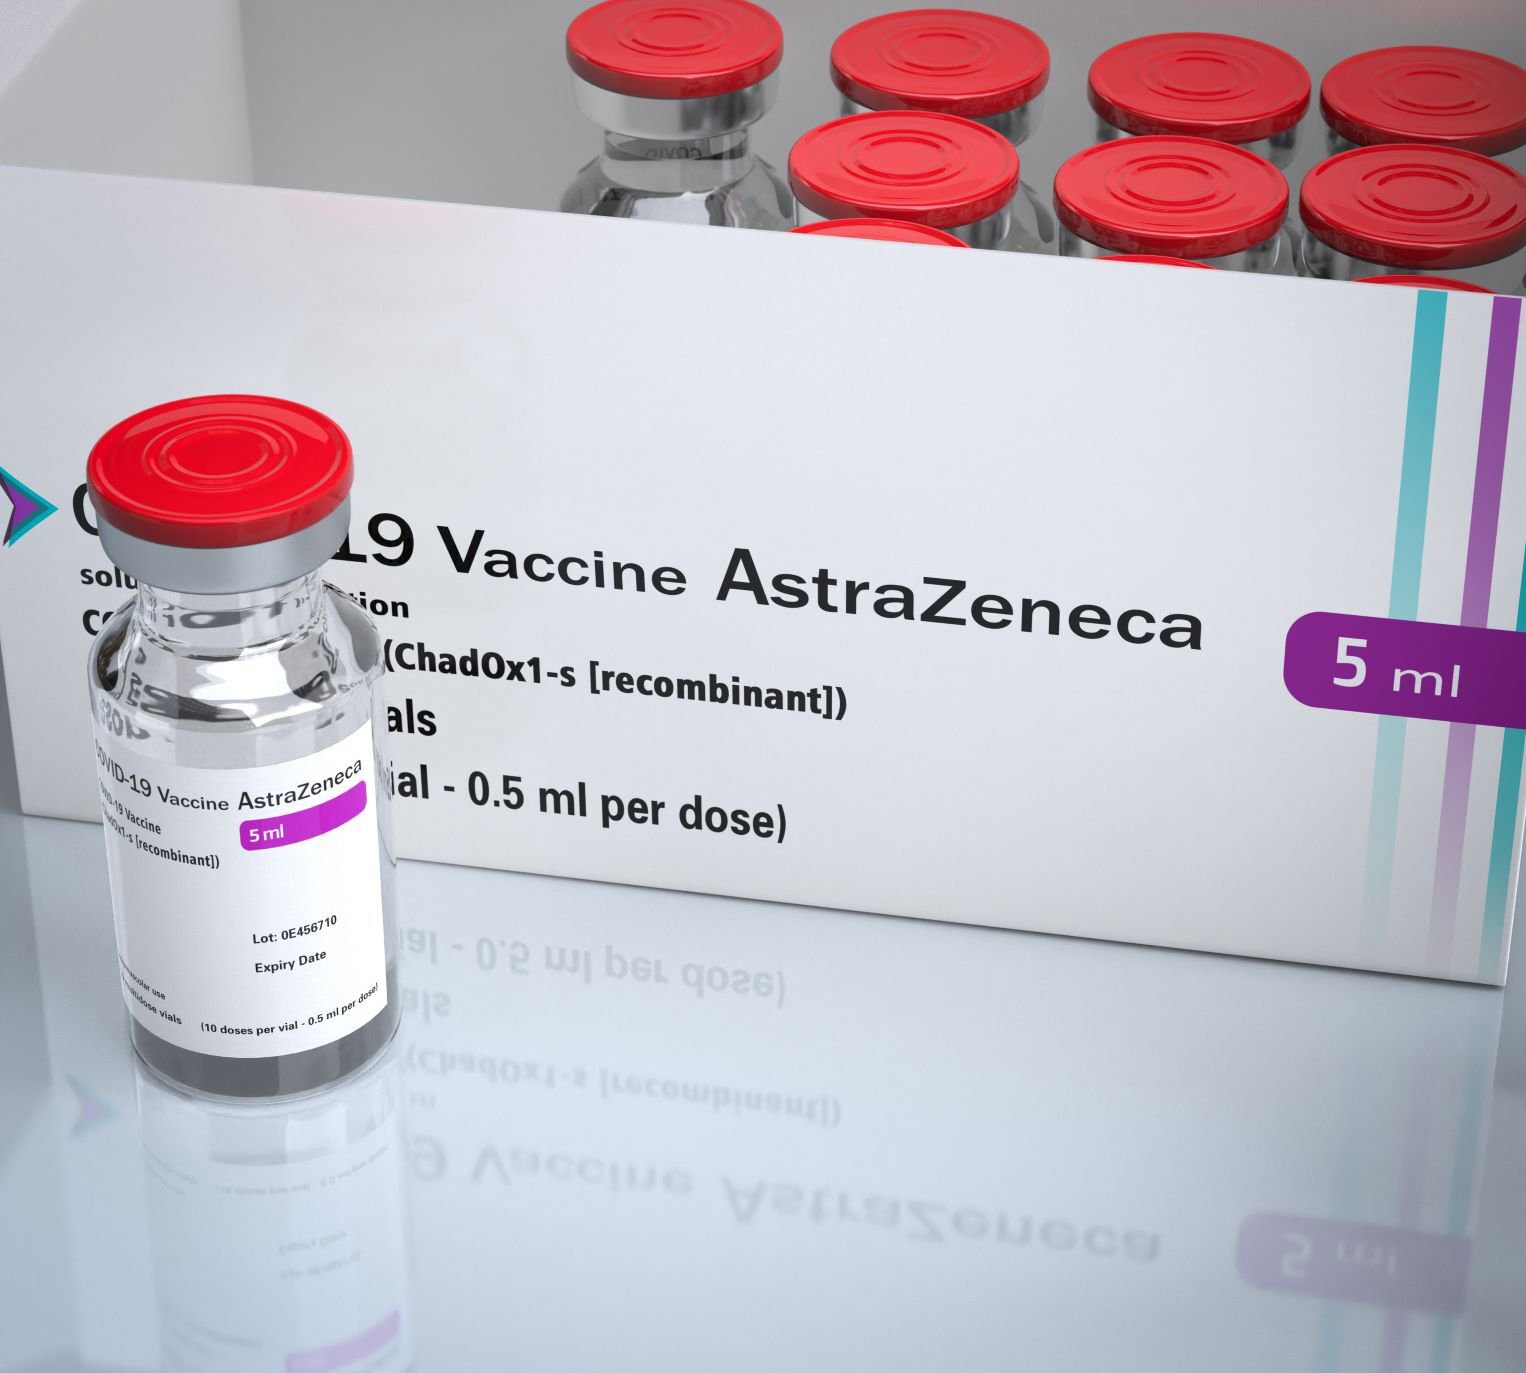 vacunas AstraZeneca